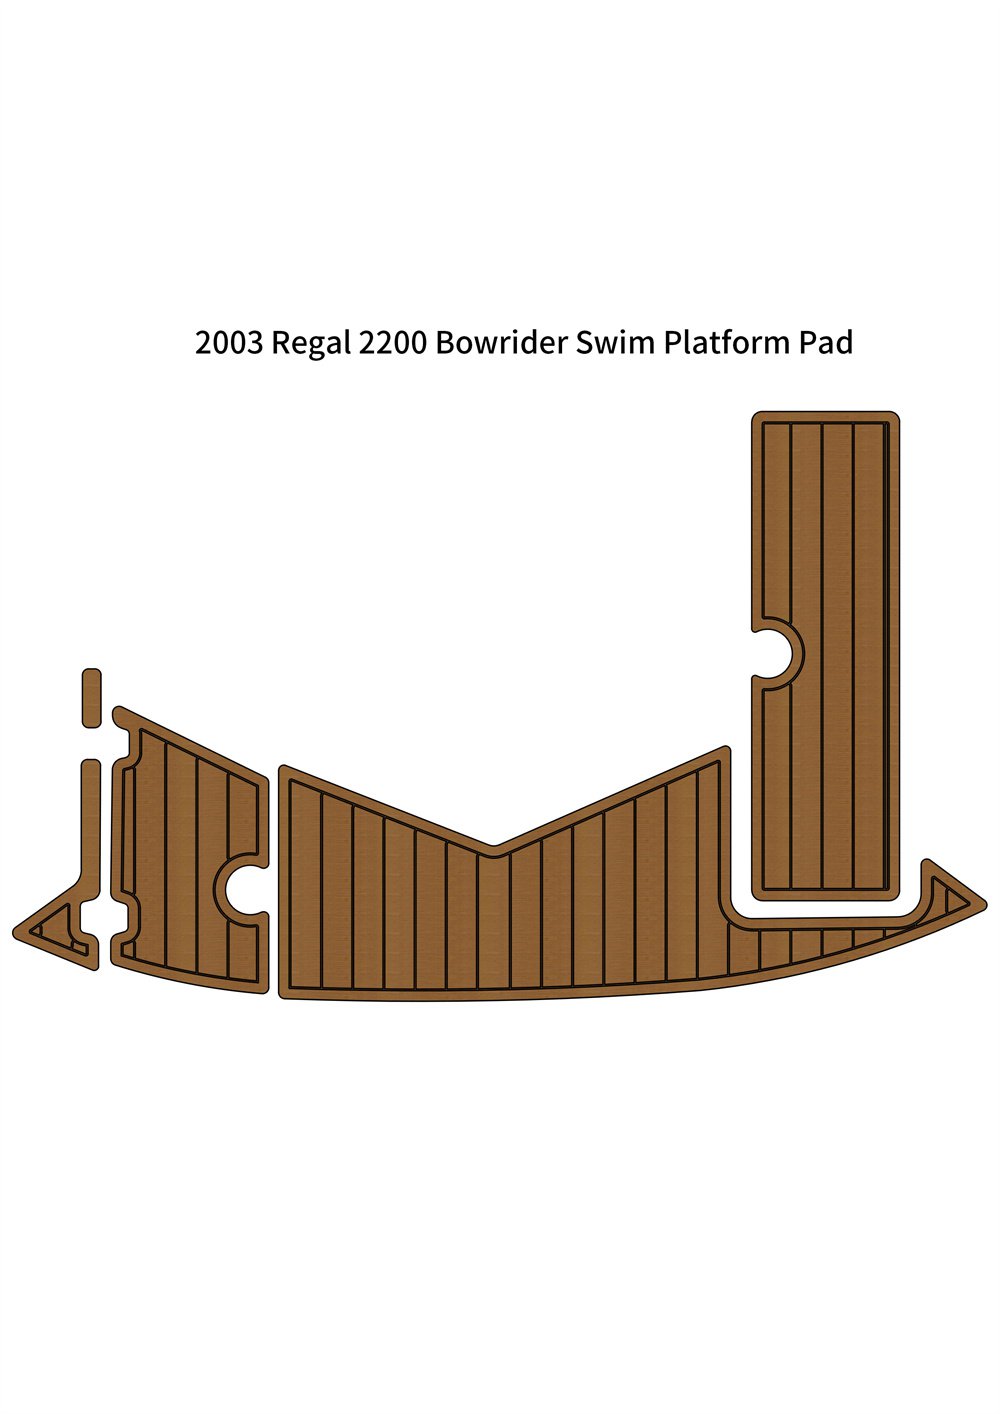 2003 Re-gal 2200 Bowrider Swim Platform Pad Boat EVA Foam Teak Deck Floor Mat